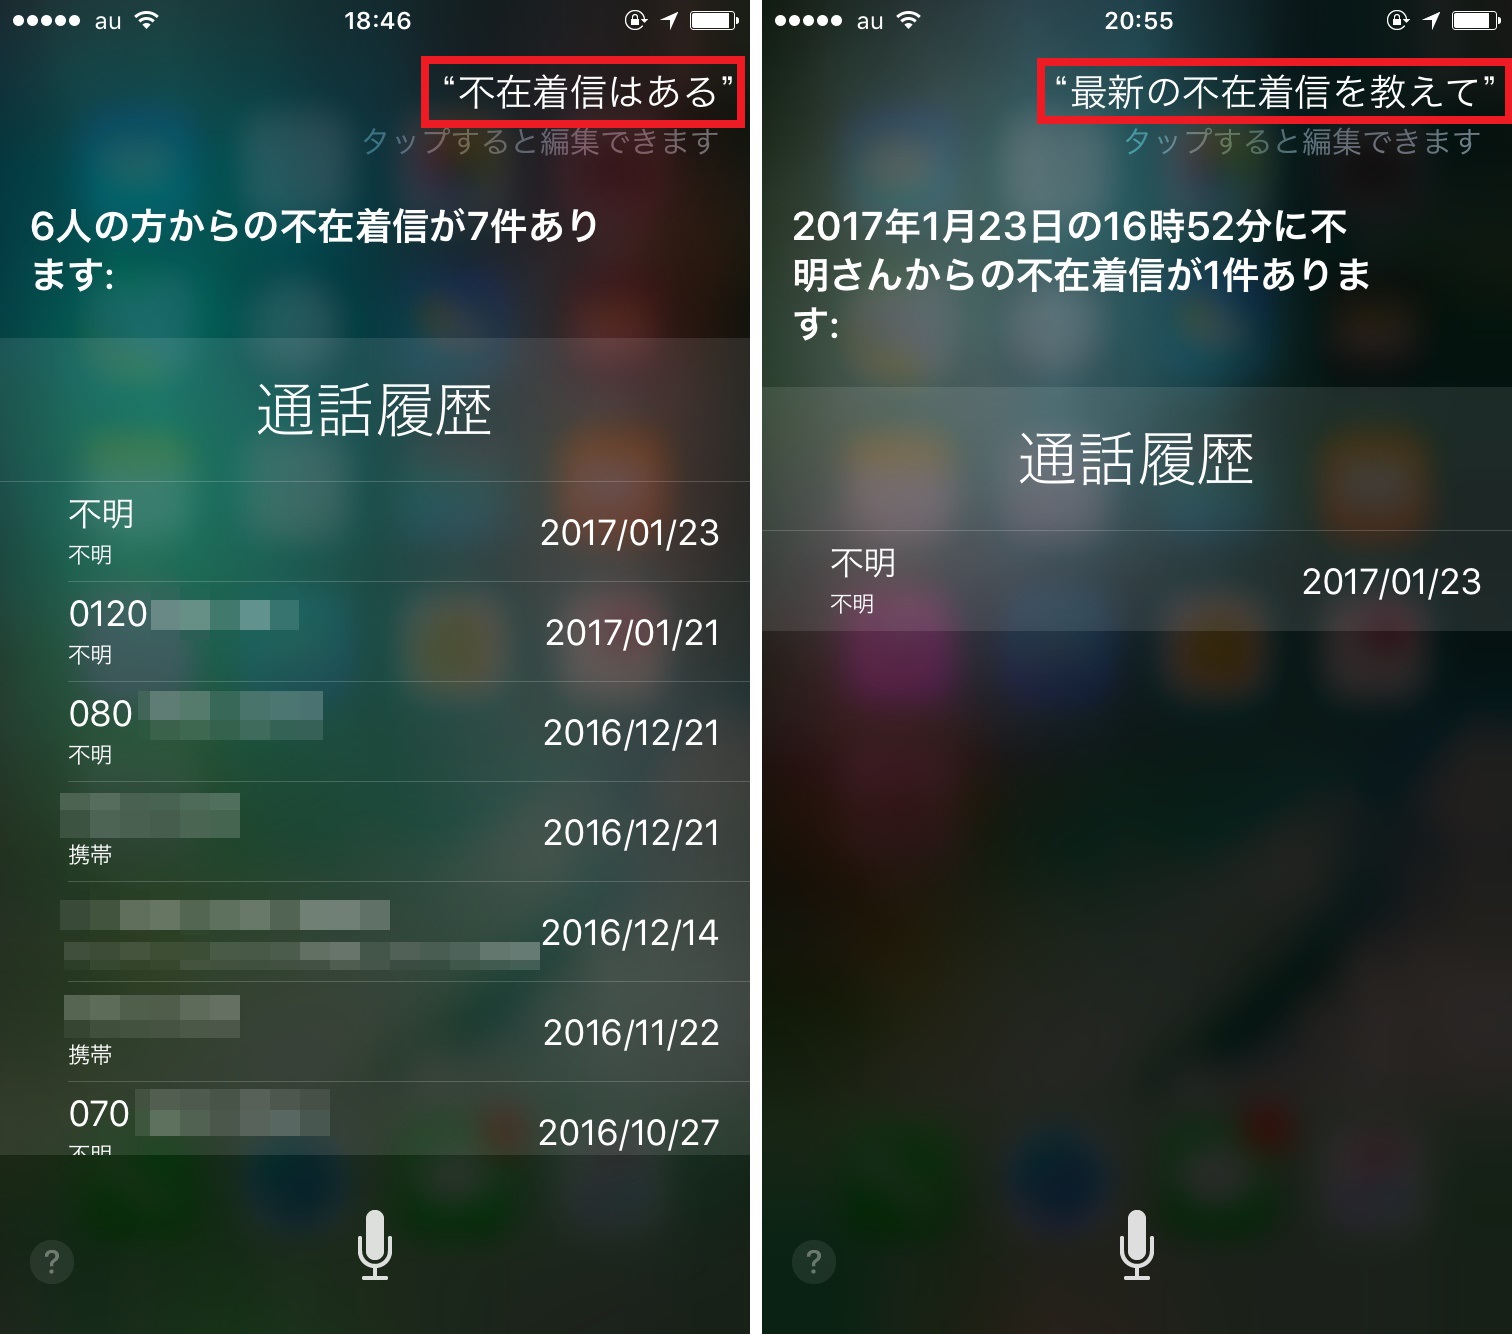 電話を掛けたいけど手が放せない そんなときはsiriからハンズフリー通話 Iphone Tips Engadget 日本版